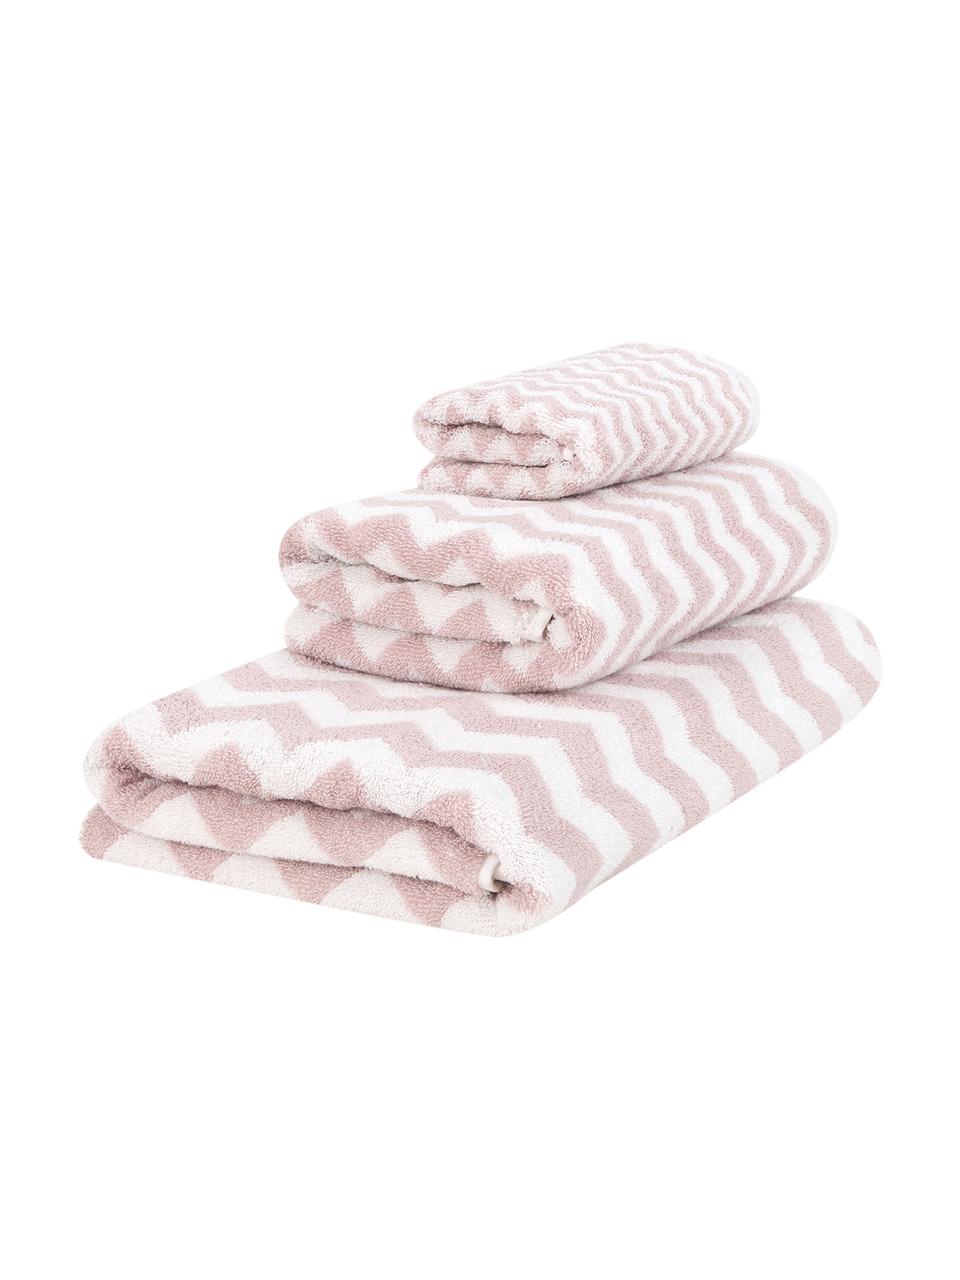 Komplet ręczników Liv, 3 elem., Blady różowy, kremowobiały, Komplet z różnymi rozmiarami